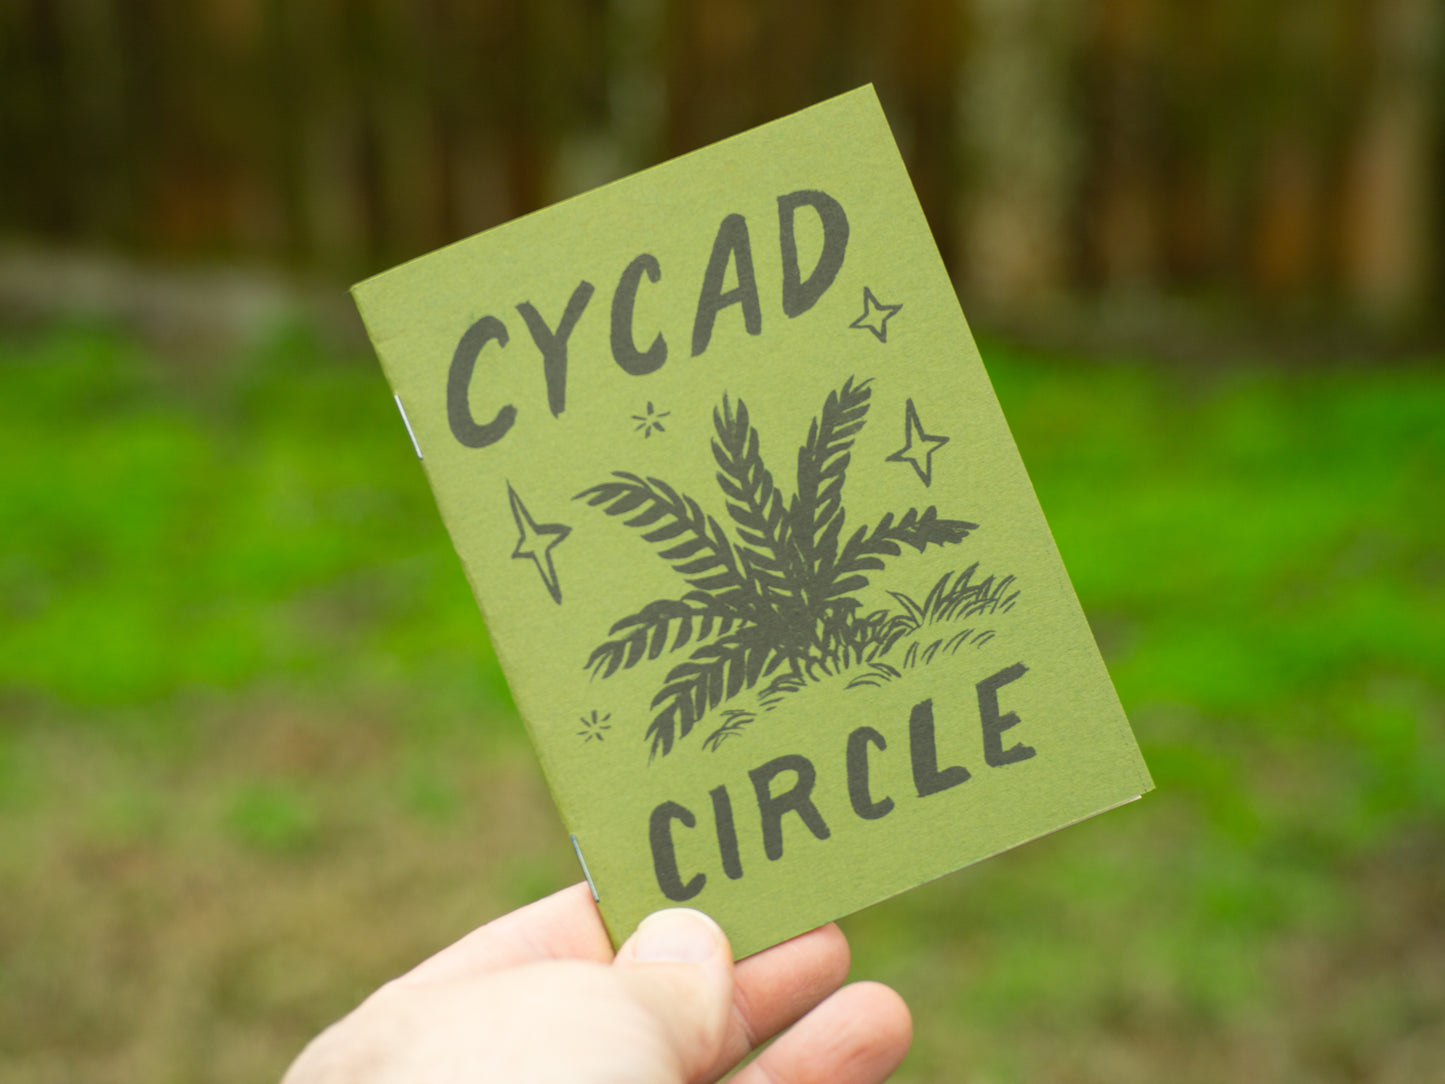 Cycad Circle